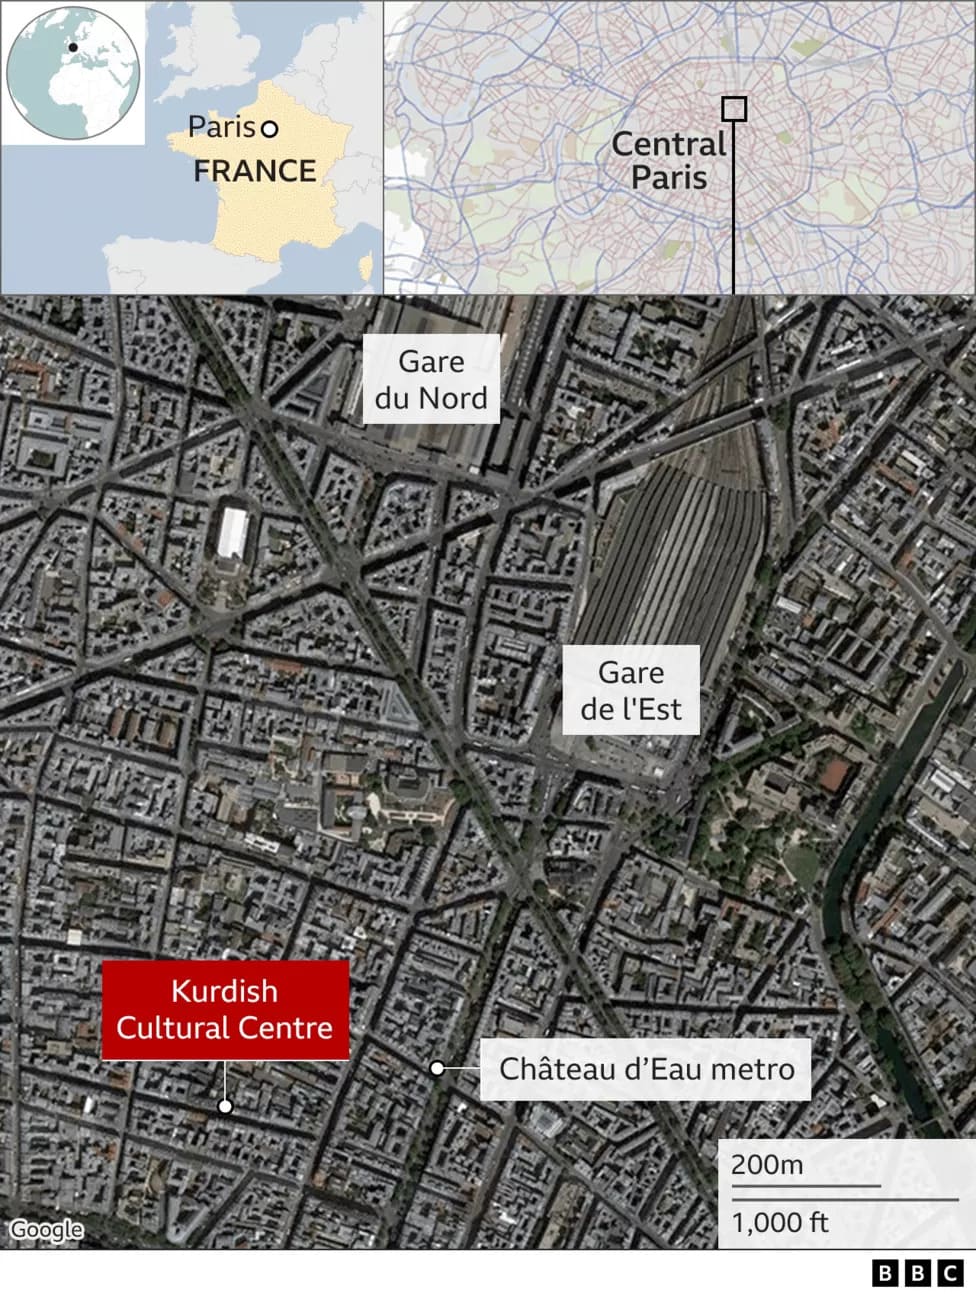 파리 도심 총격 발생으로 3명 사망 1병 중태 VIDEO: Paris shooting: At least 3 dead&#44; several injured in attack at Kurdish centre